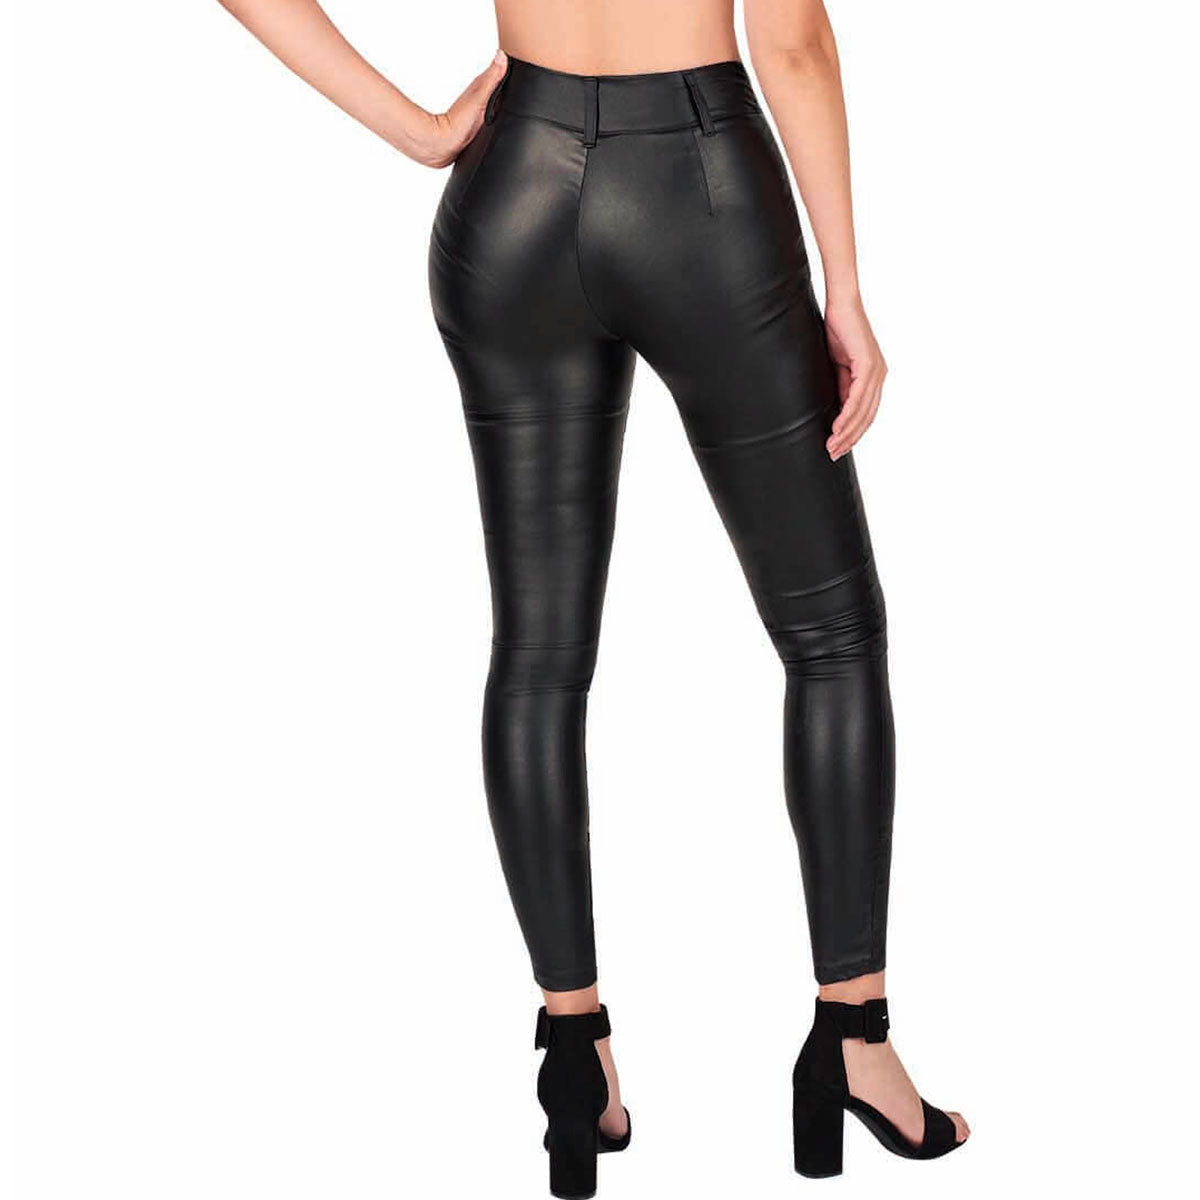 Pantalon Para Mujer TREVO 1034-07 Negro Tipo Cuero – CASTALIA